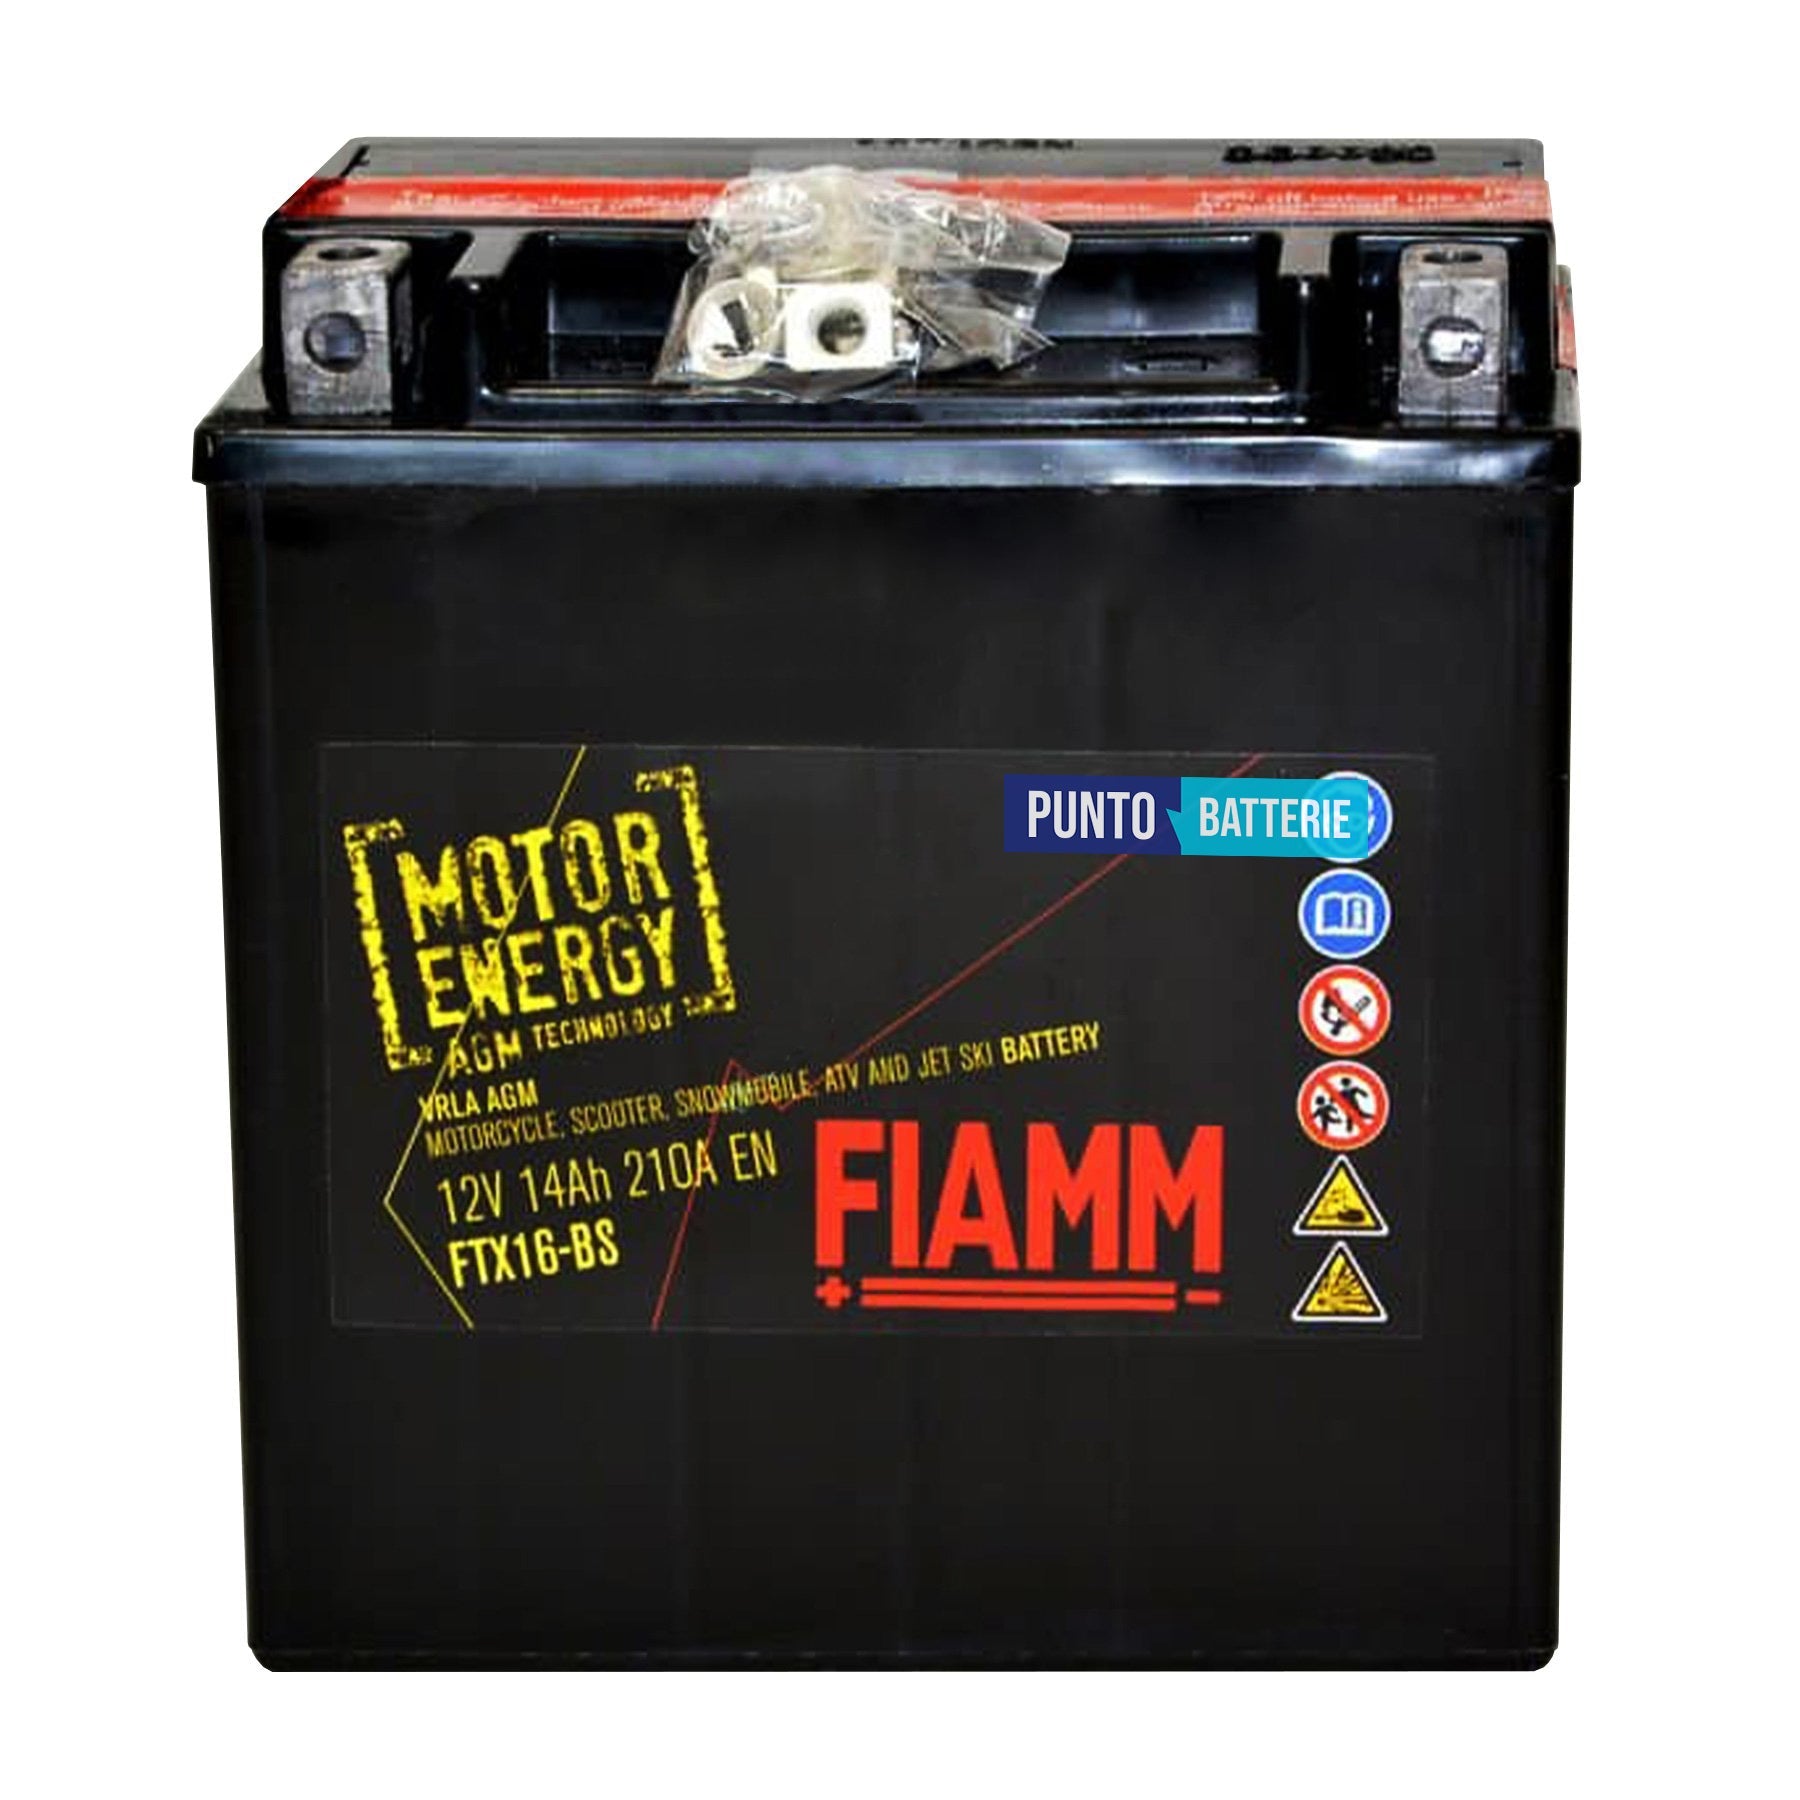 Batteria Fiamm 14Ah, 12V, 210A , 150x87x161mm